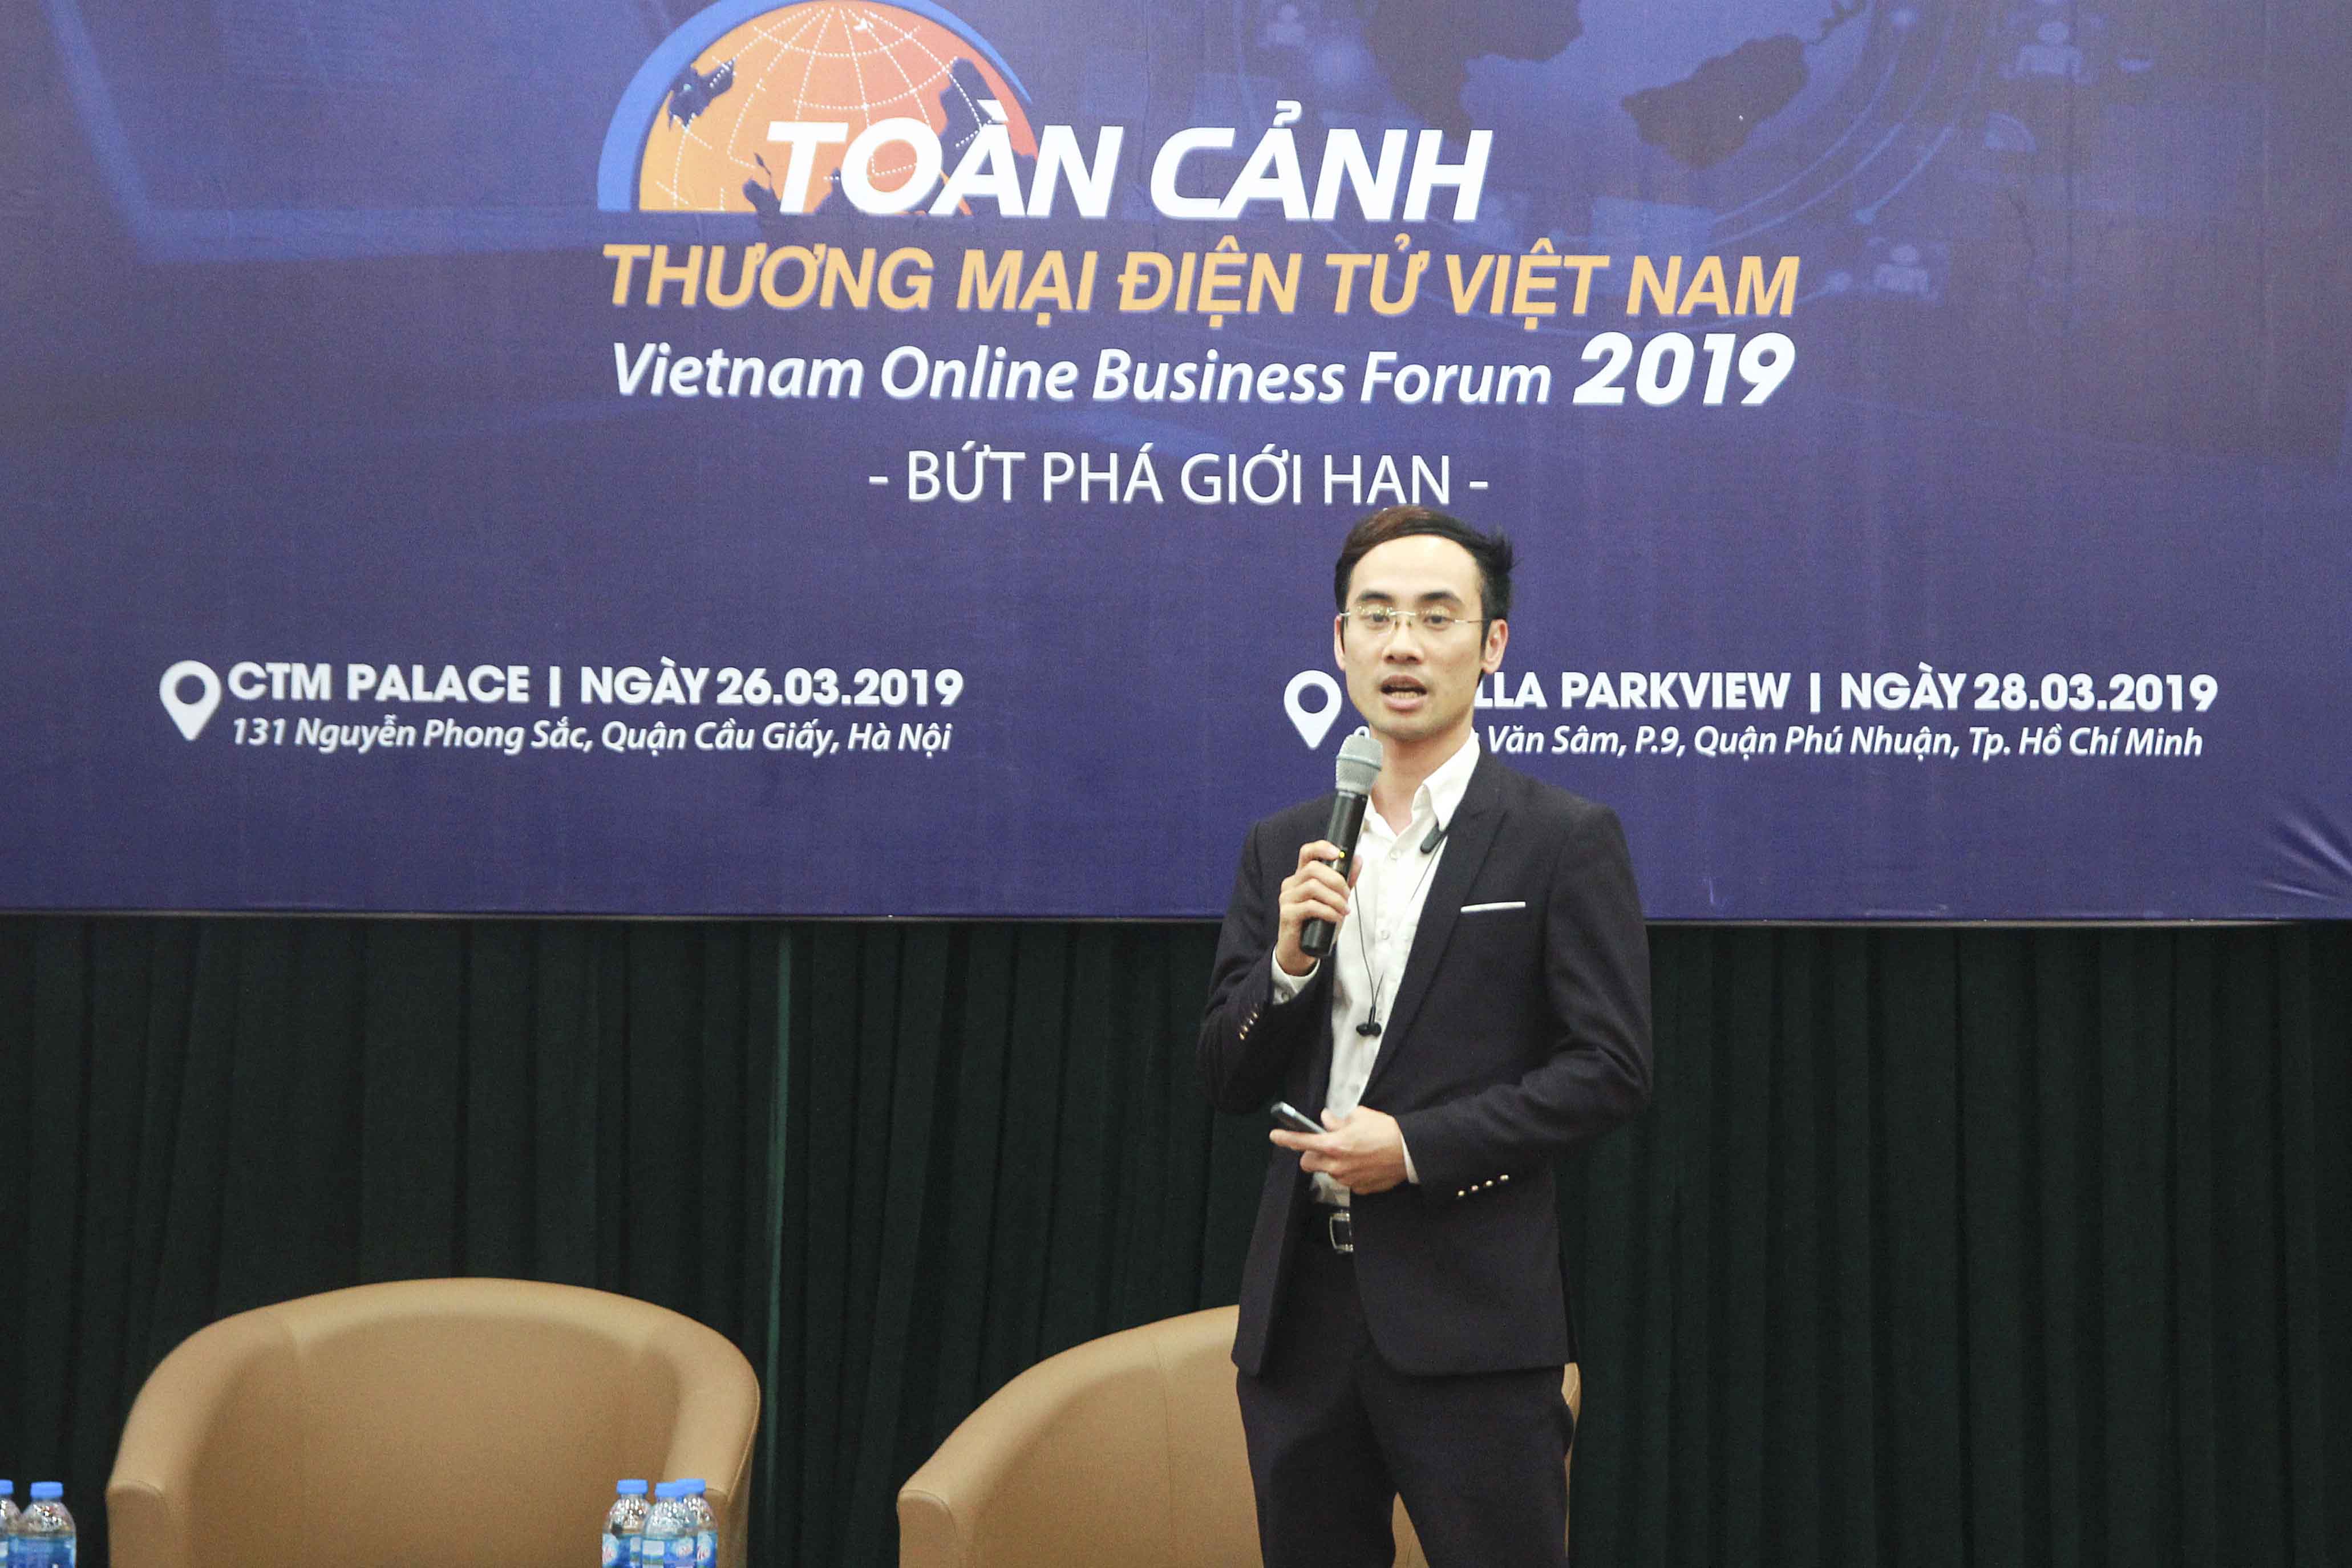 Ông Đỗ Hữu Hưng - CEO ACCESSTRADE tại Họp báo Diễn đàn Toàn cảnh Thương mại điện tử Việt Nam 2019